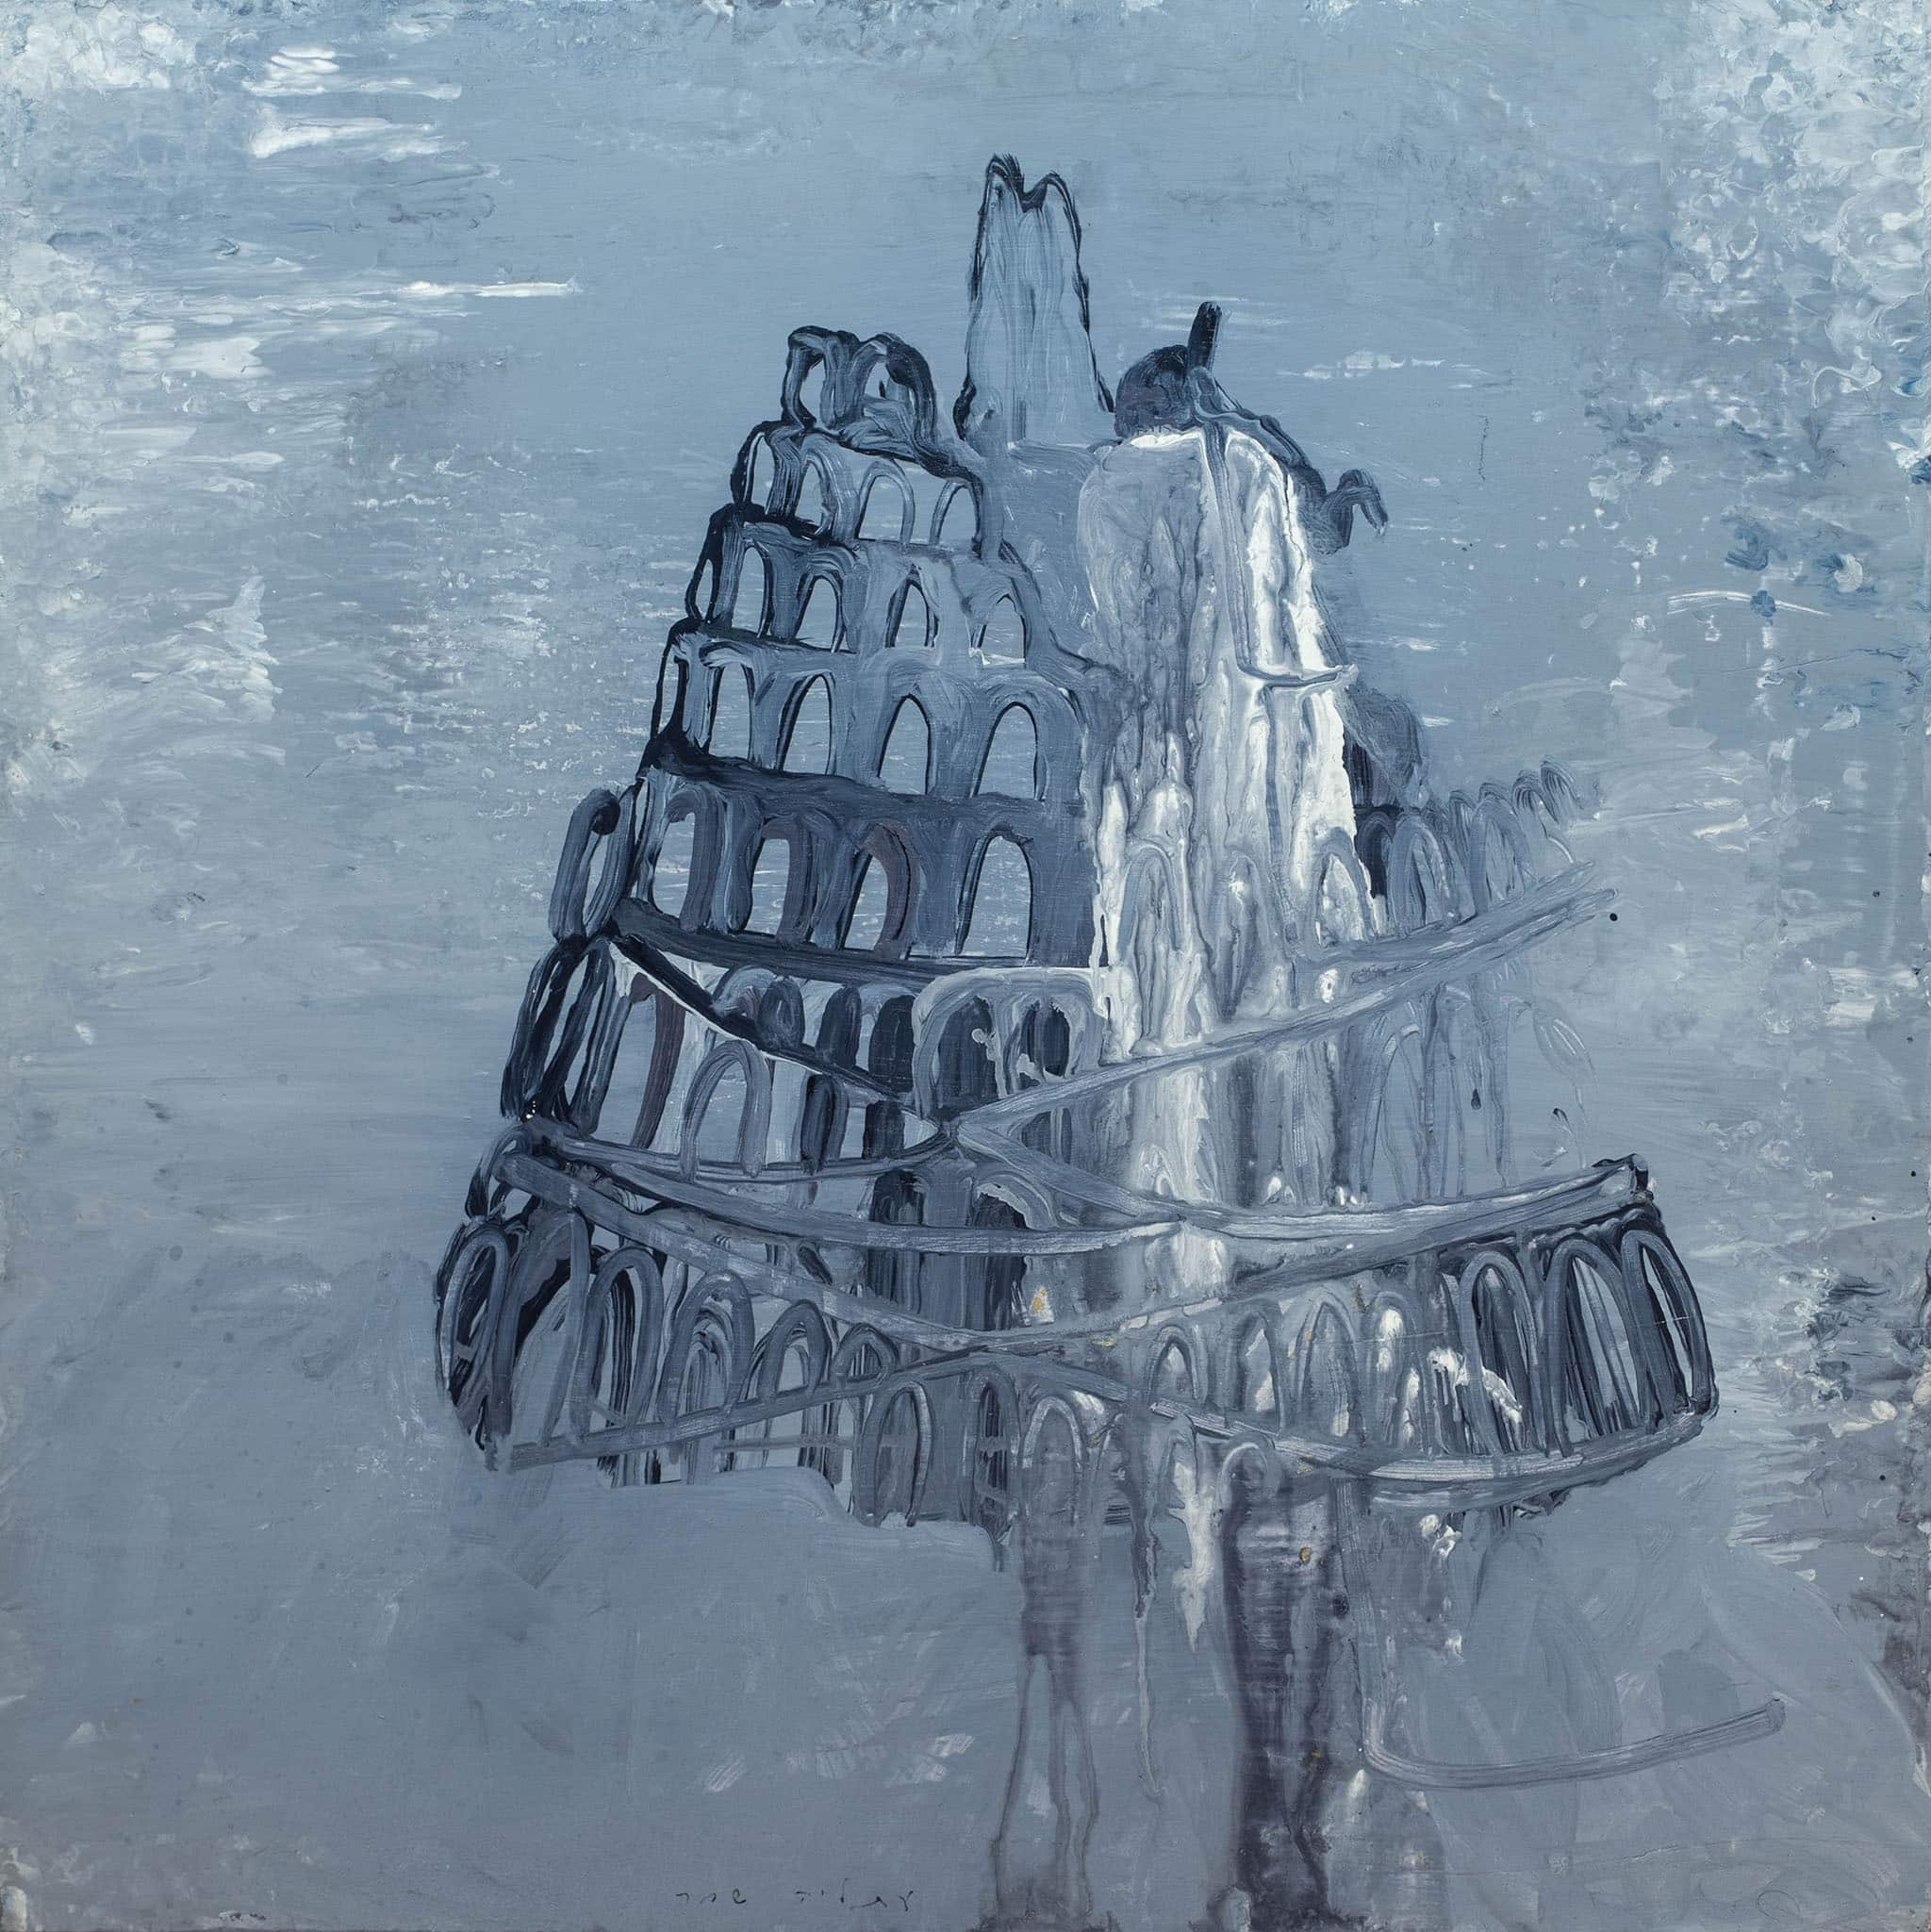 עתליה שחר, "מגדל בבל", 2011, אקריליק על עץ לבוד, 60×60 ס"מ